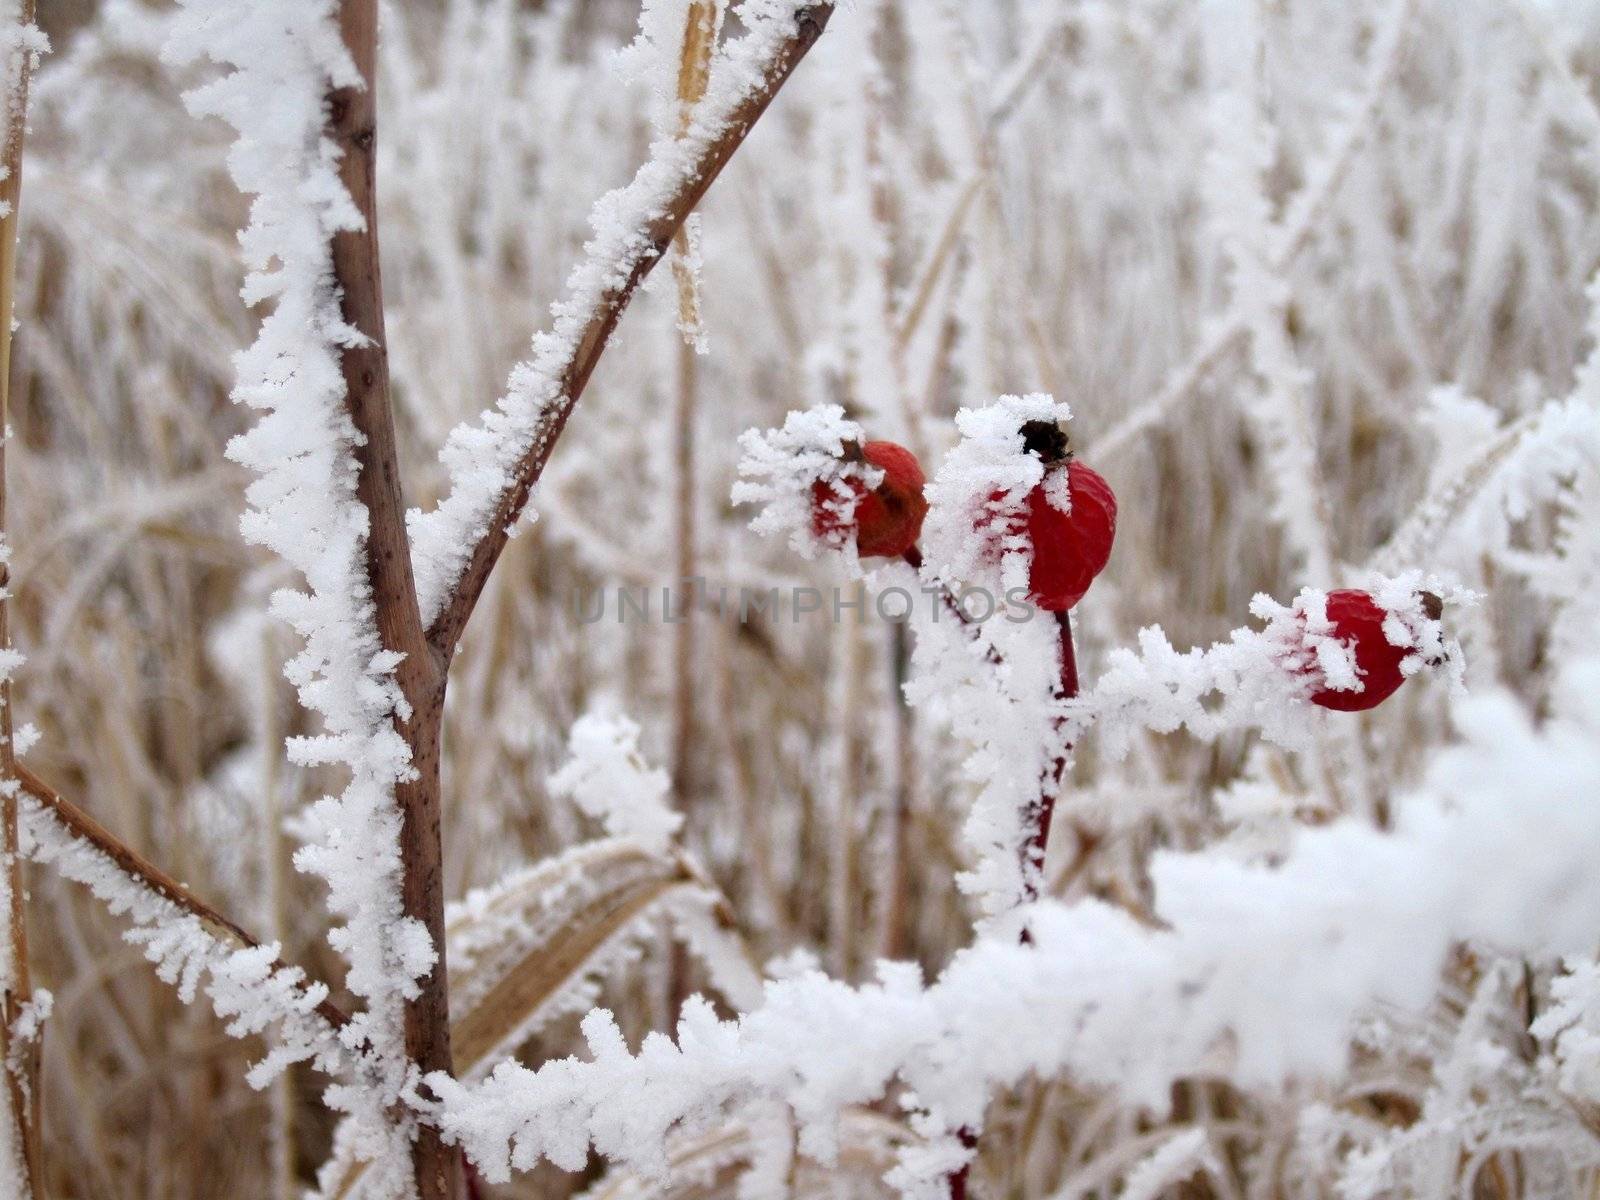 Frozen Prairie Berries 3 by BrianneLeeHoffman